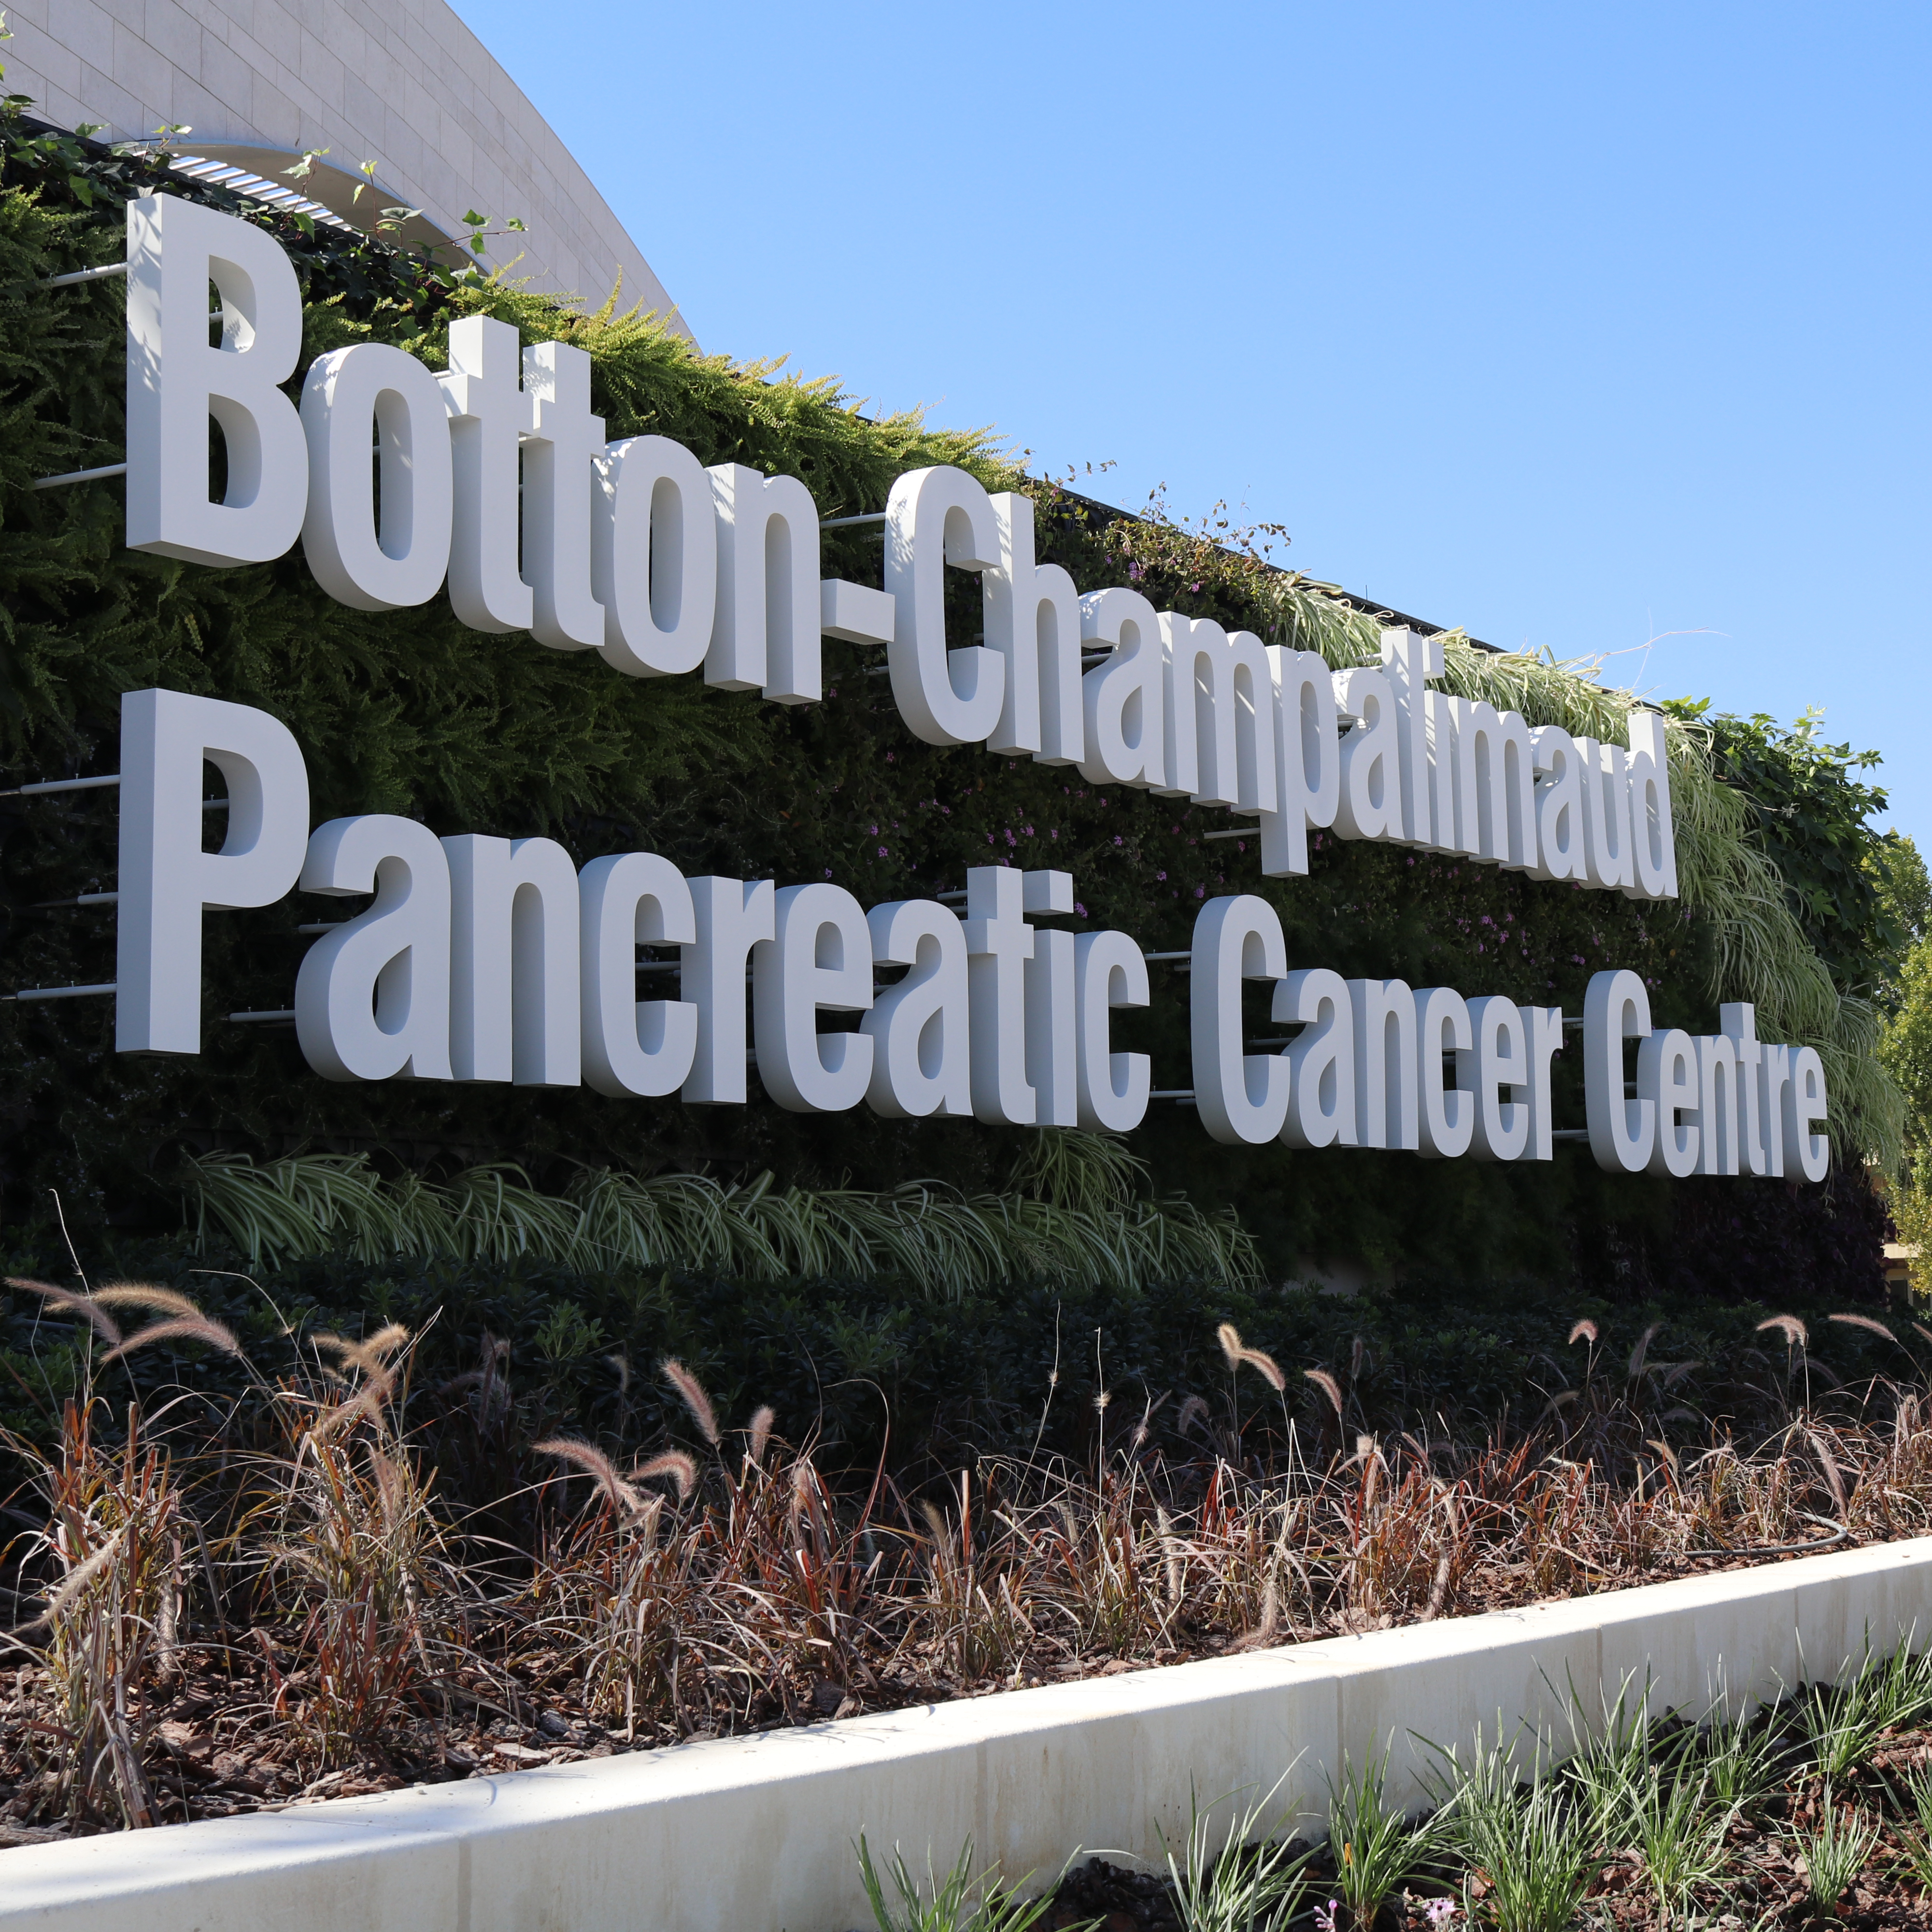 Inauguração do Botton-Champalimaud Pancreatic Cancer Centre